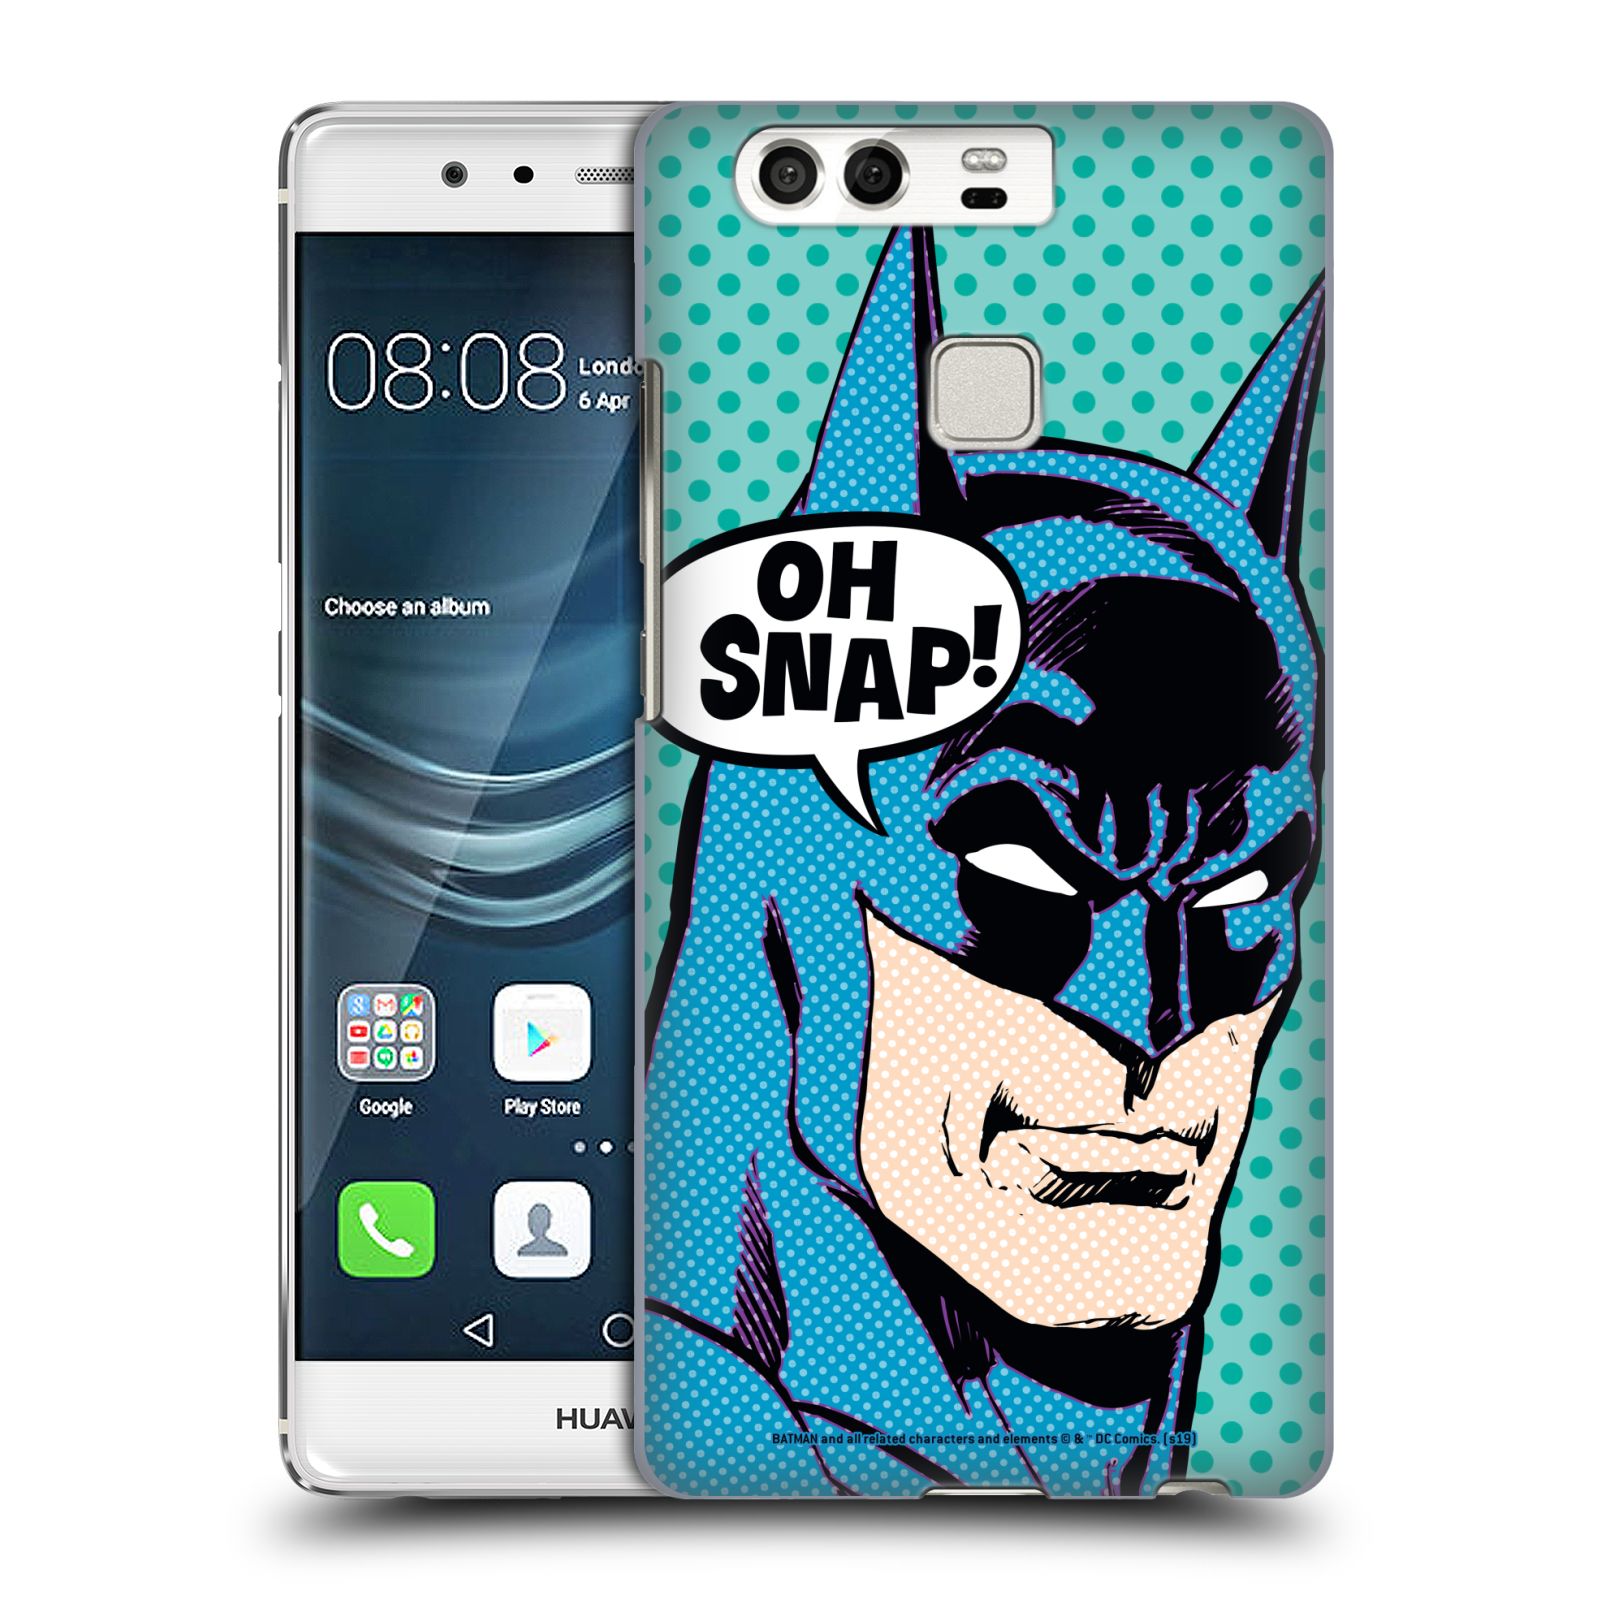 Pouzdro na mobil Huawei P9 / P9 DUAL SIM - HEAD CASE - DC komix Batman Pop Art tvář